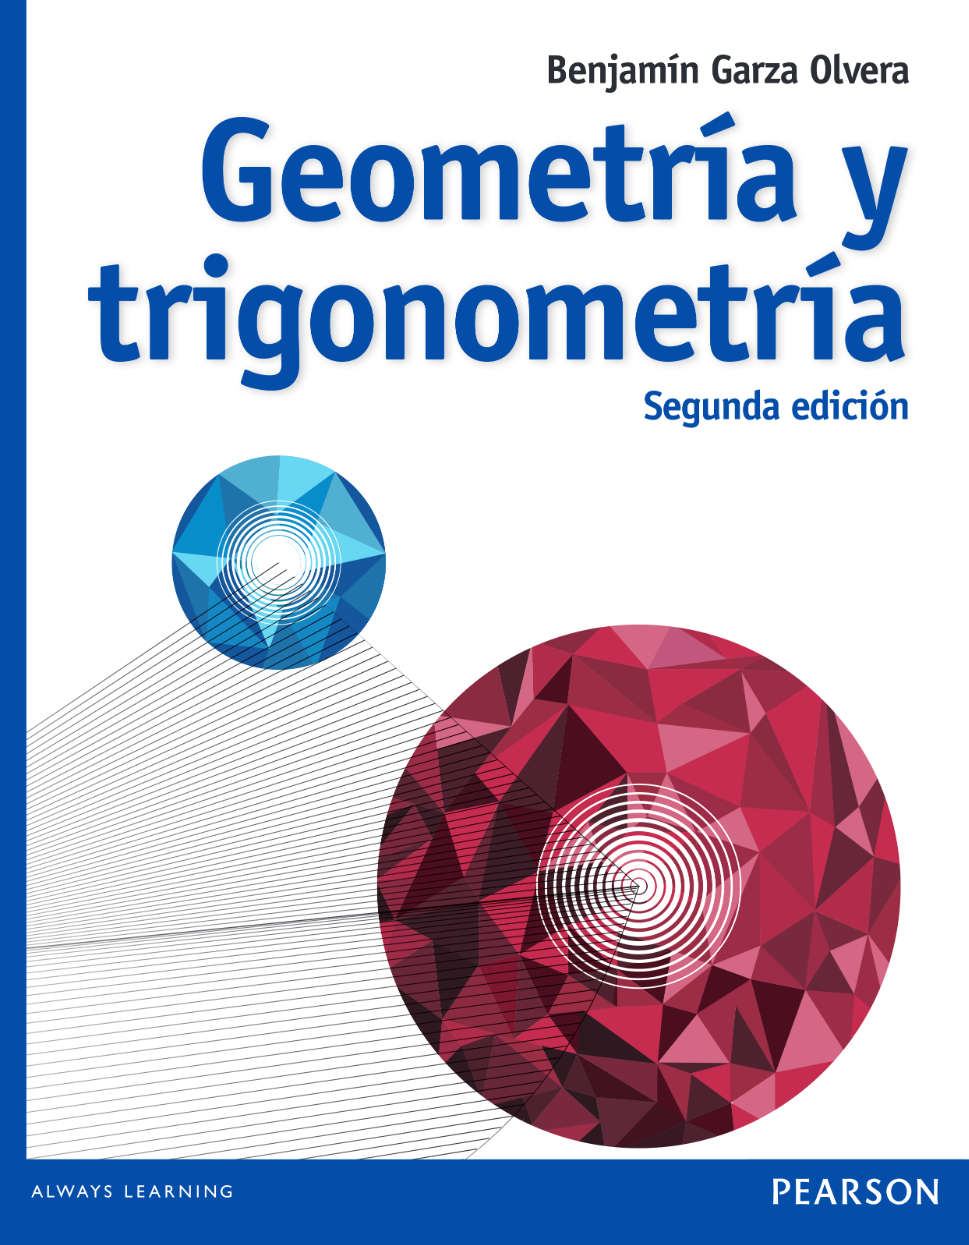 Geometría y Trigonometría 2 Edición Benjamin Garza Olvera PDF